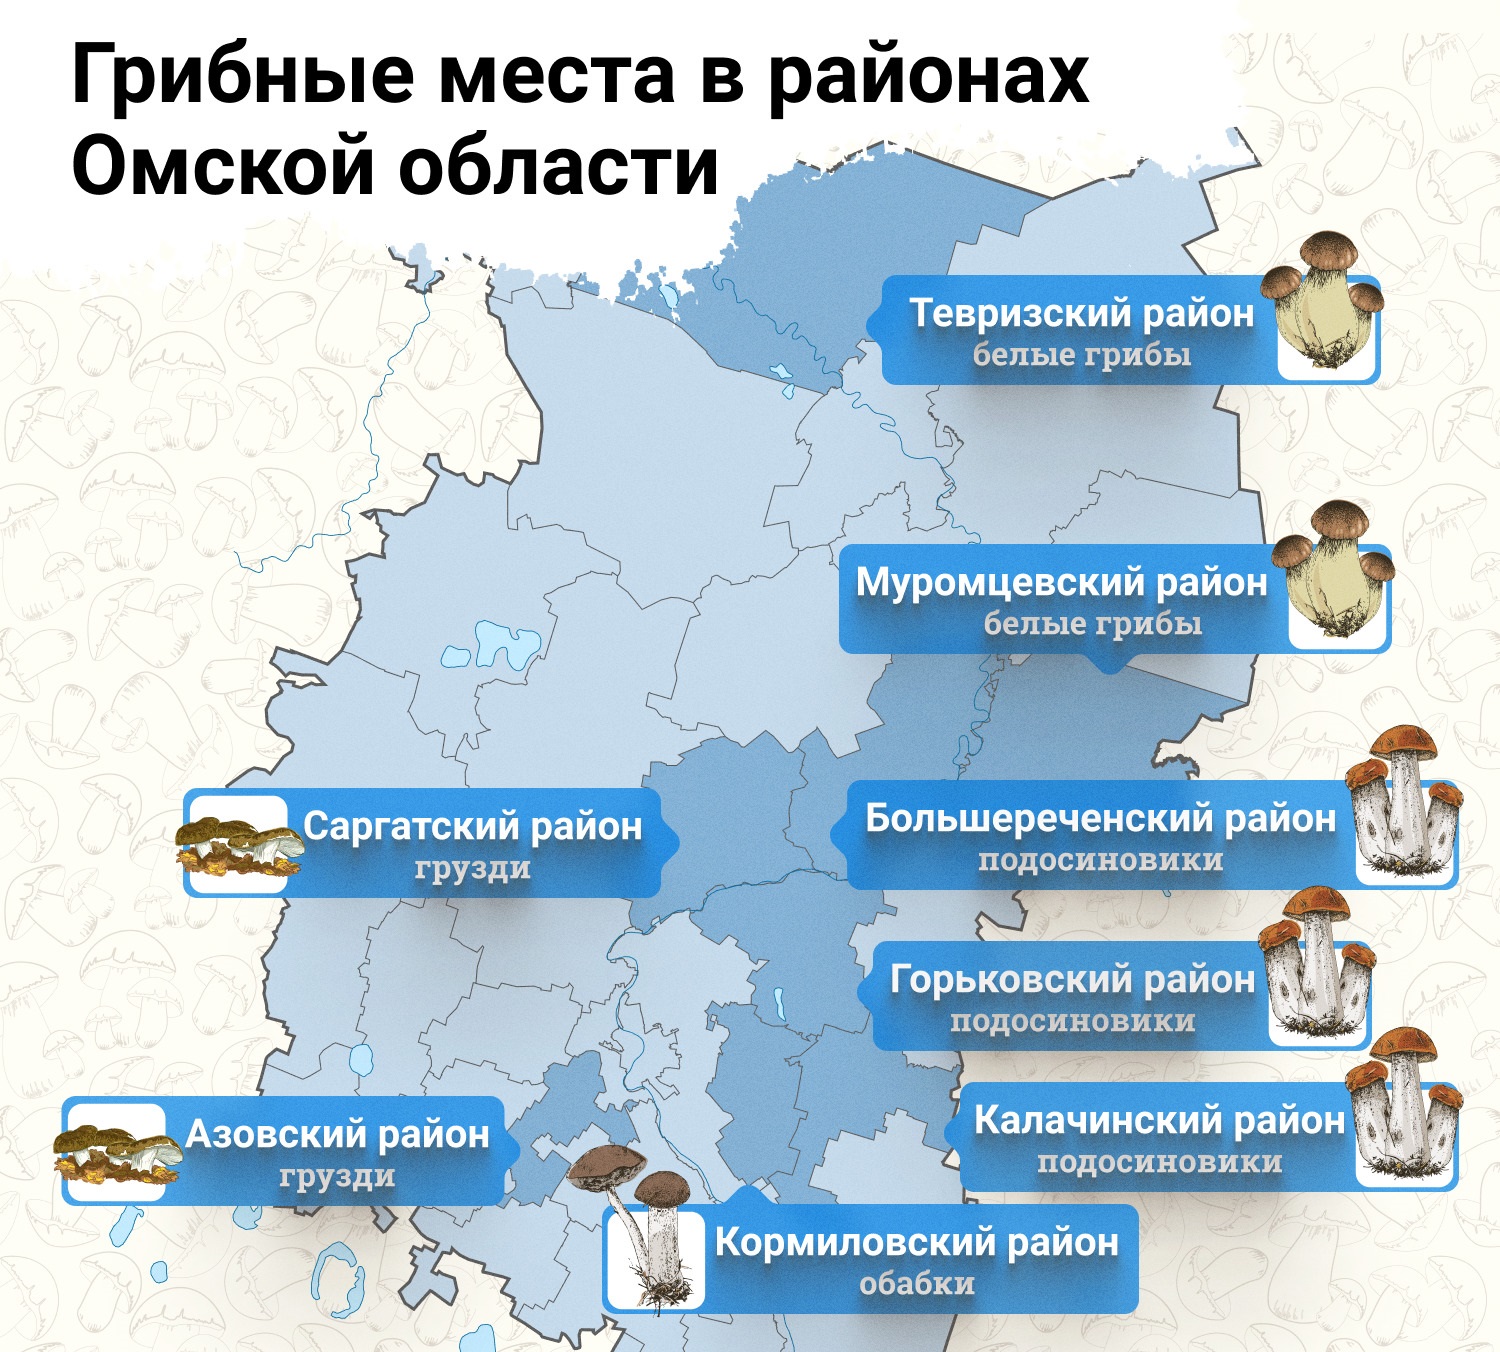 Грибные места в районах Омской области